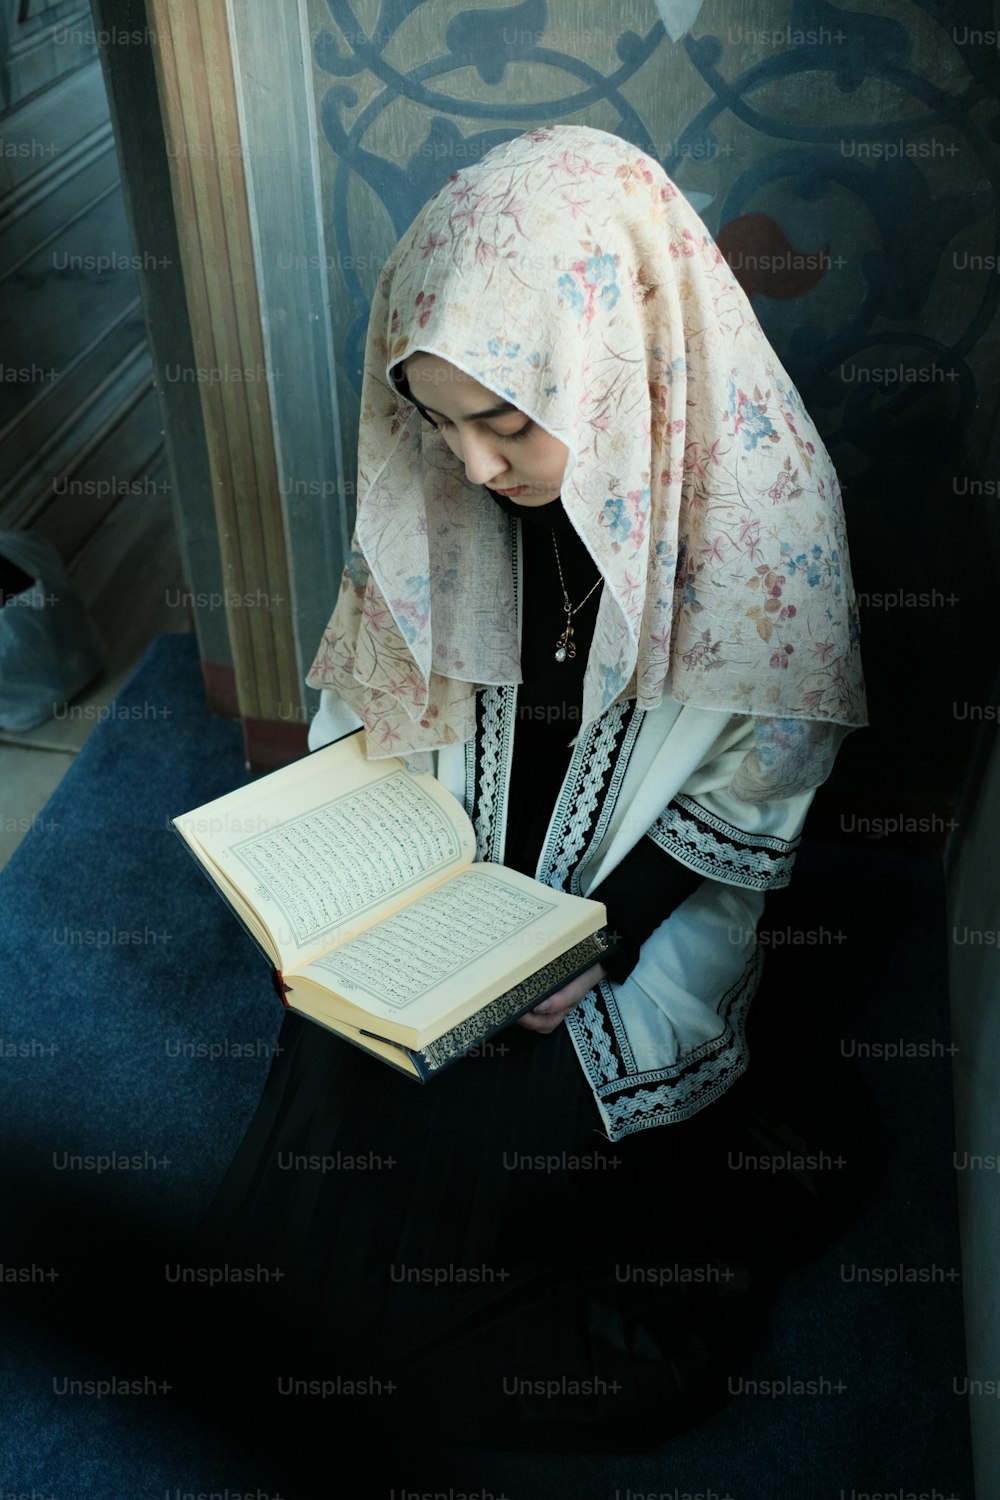 히잡을 쓴 여자가 책을 읽고 있다